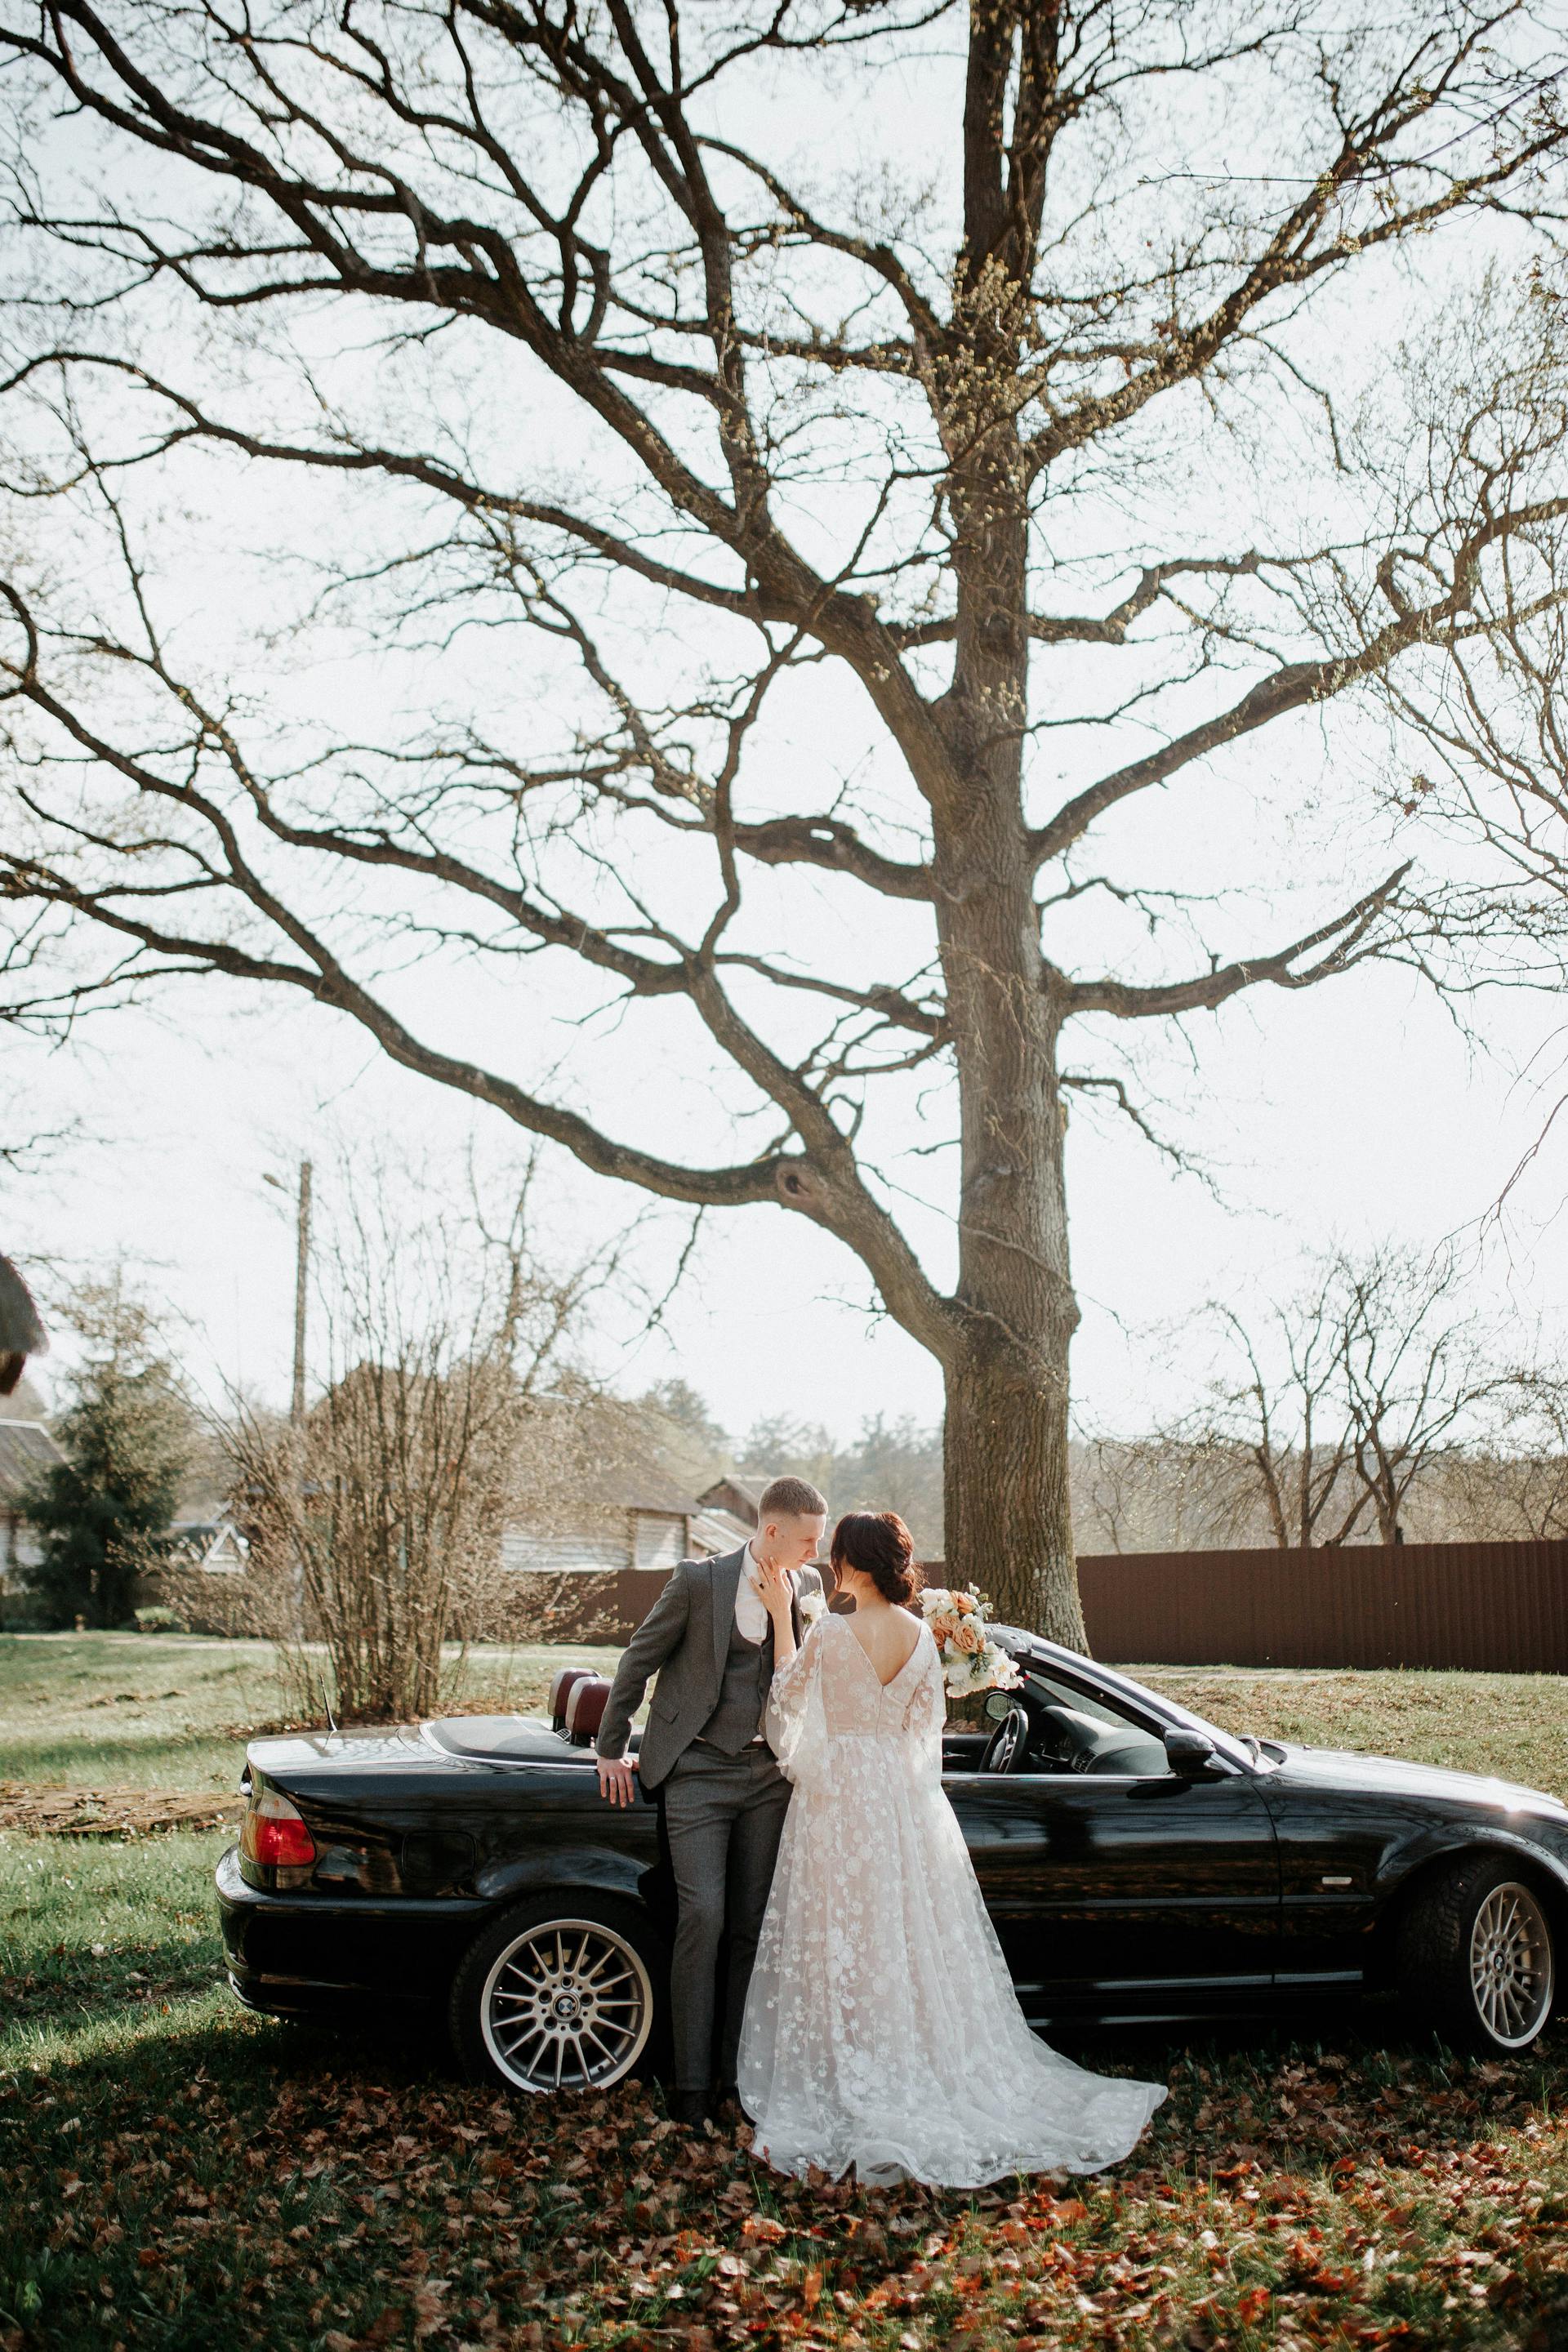 Une mariée et un marié debout à côté d'une voiture | Source : Pexels